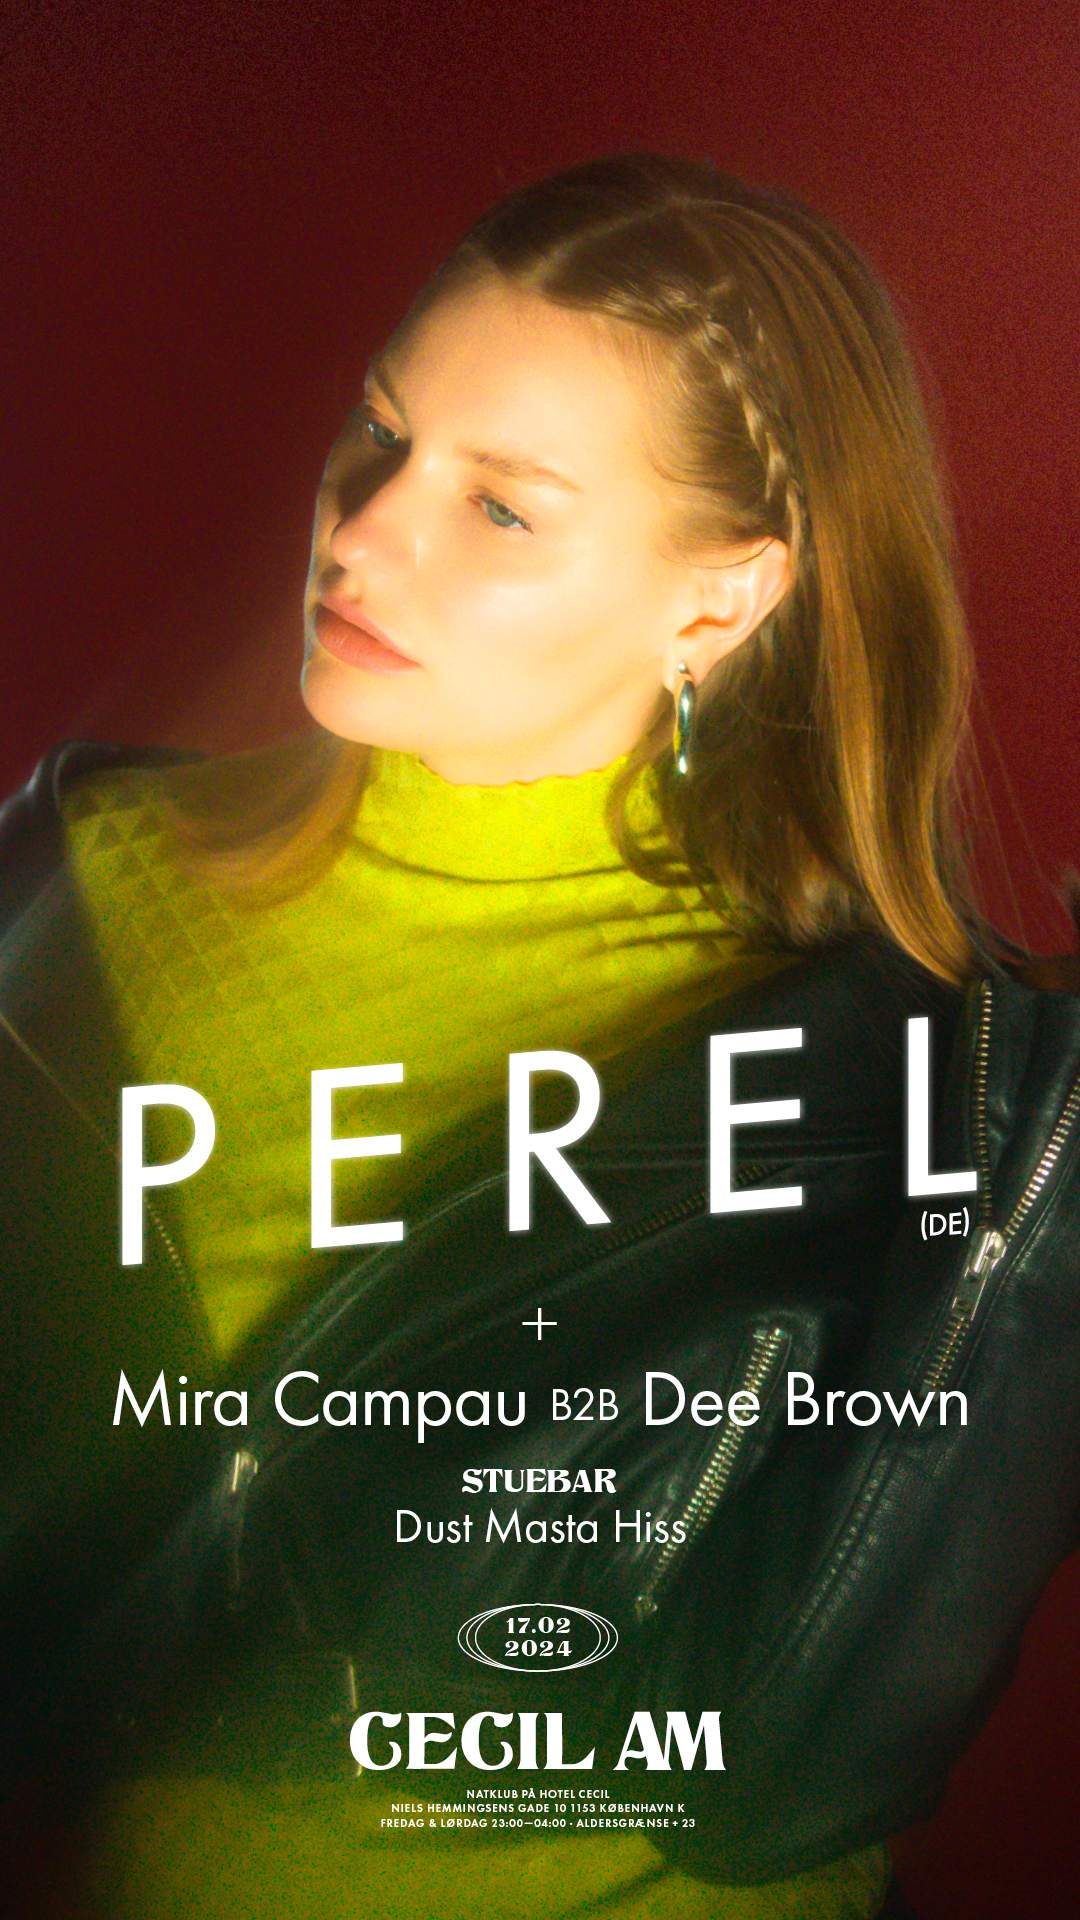 Perel (DE) + Djs Mira Campau B2B Dee Brown &Dust Masta Hiss - Página frontal